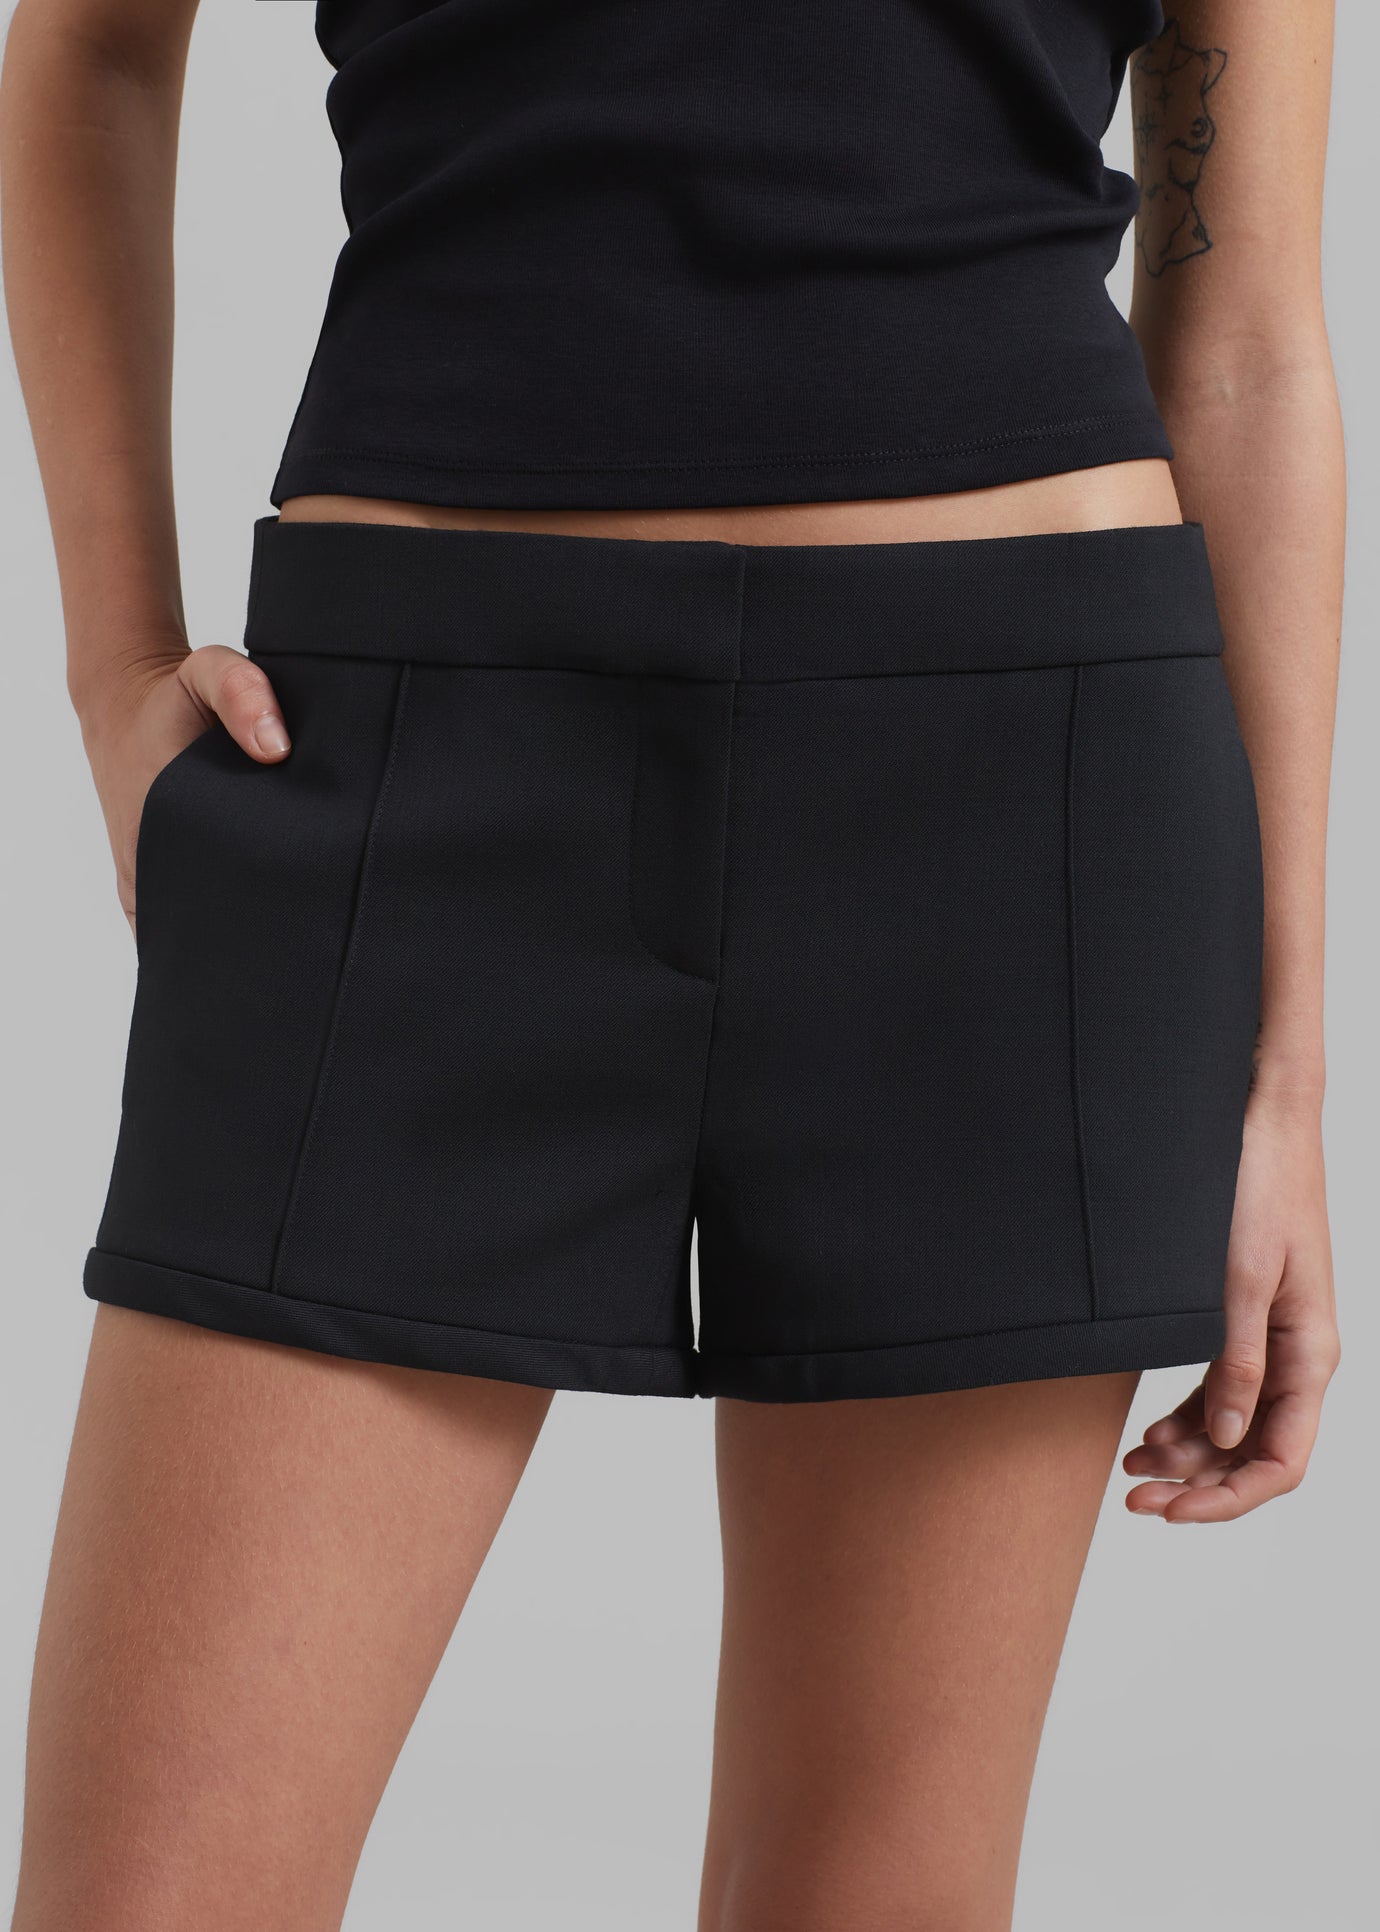 Coperni Tailored Shorts - Black - 1